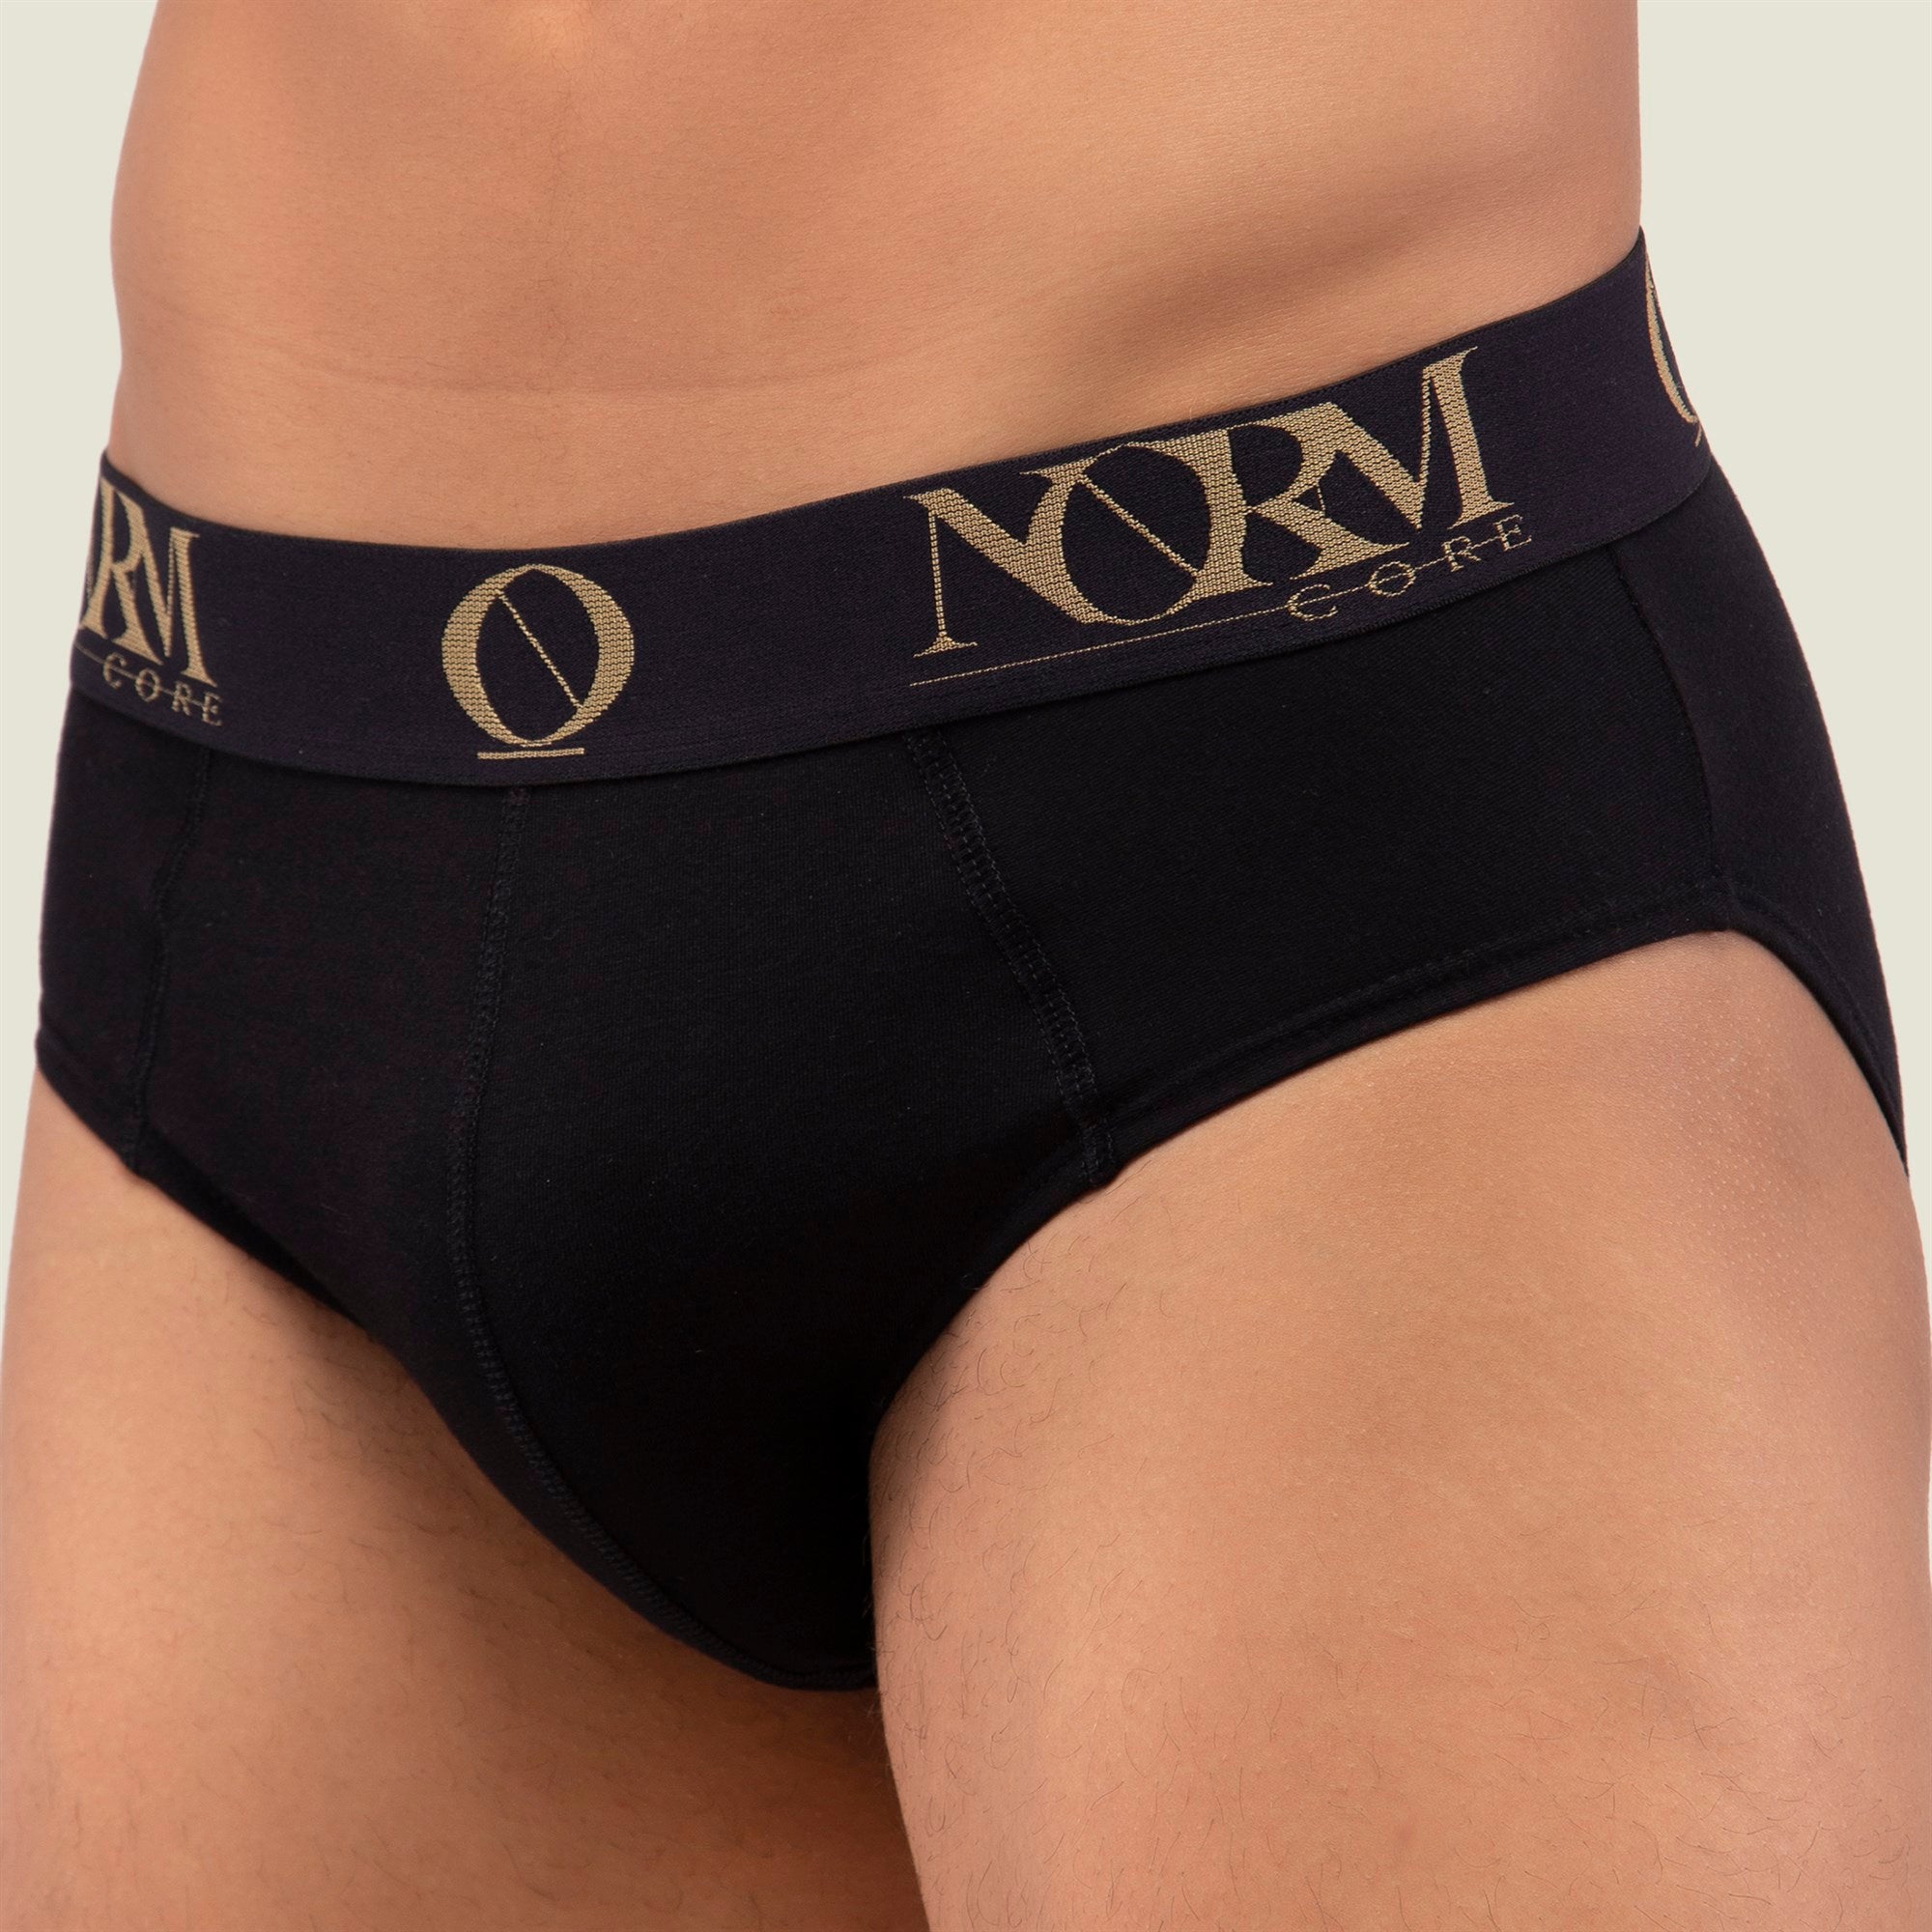 Normcore Cotton Innerwear - Black Brief with Gold Waistband Underwear